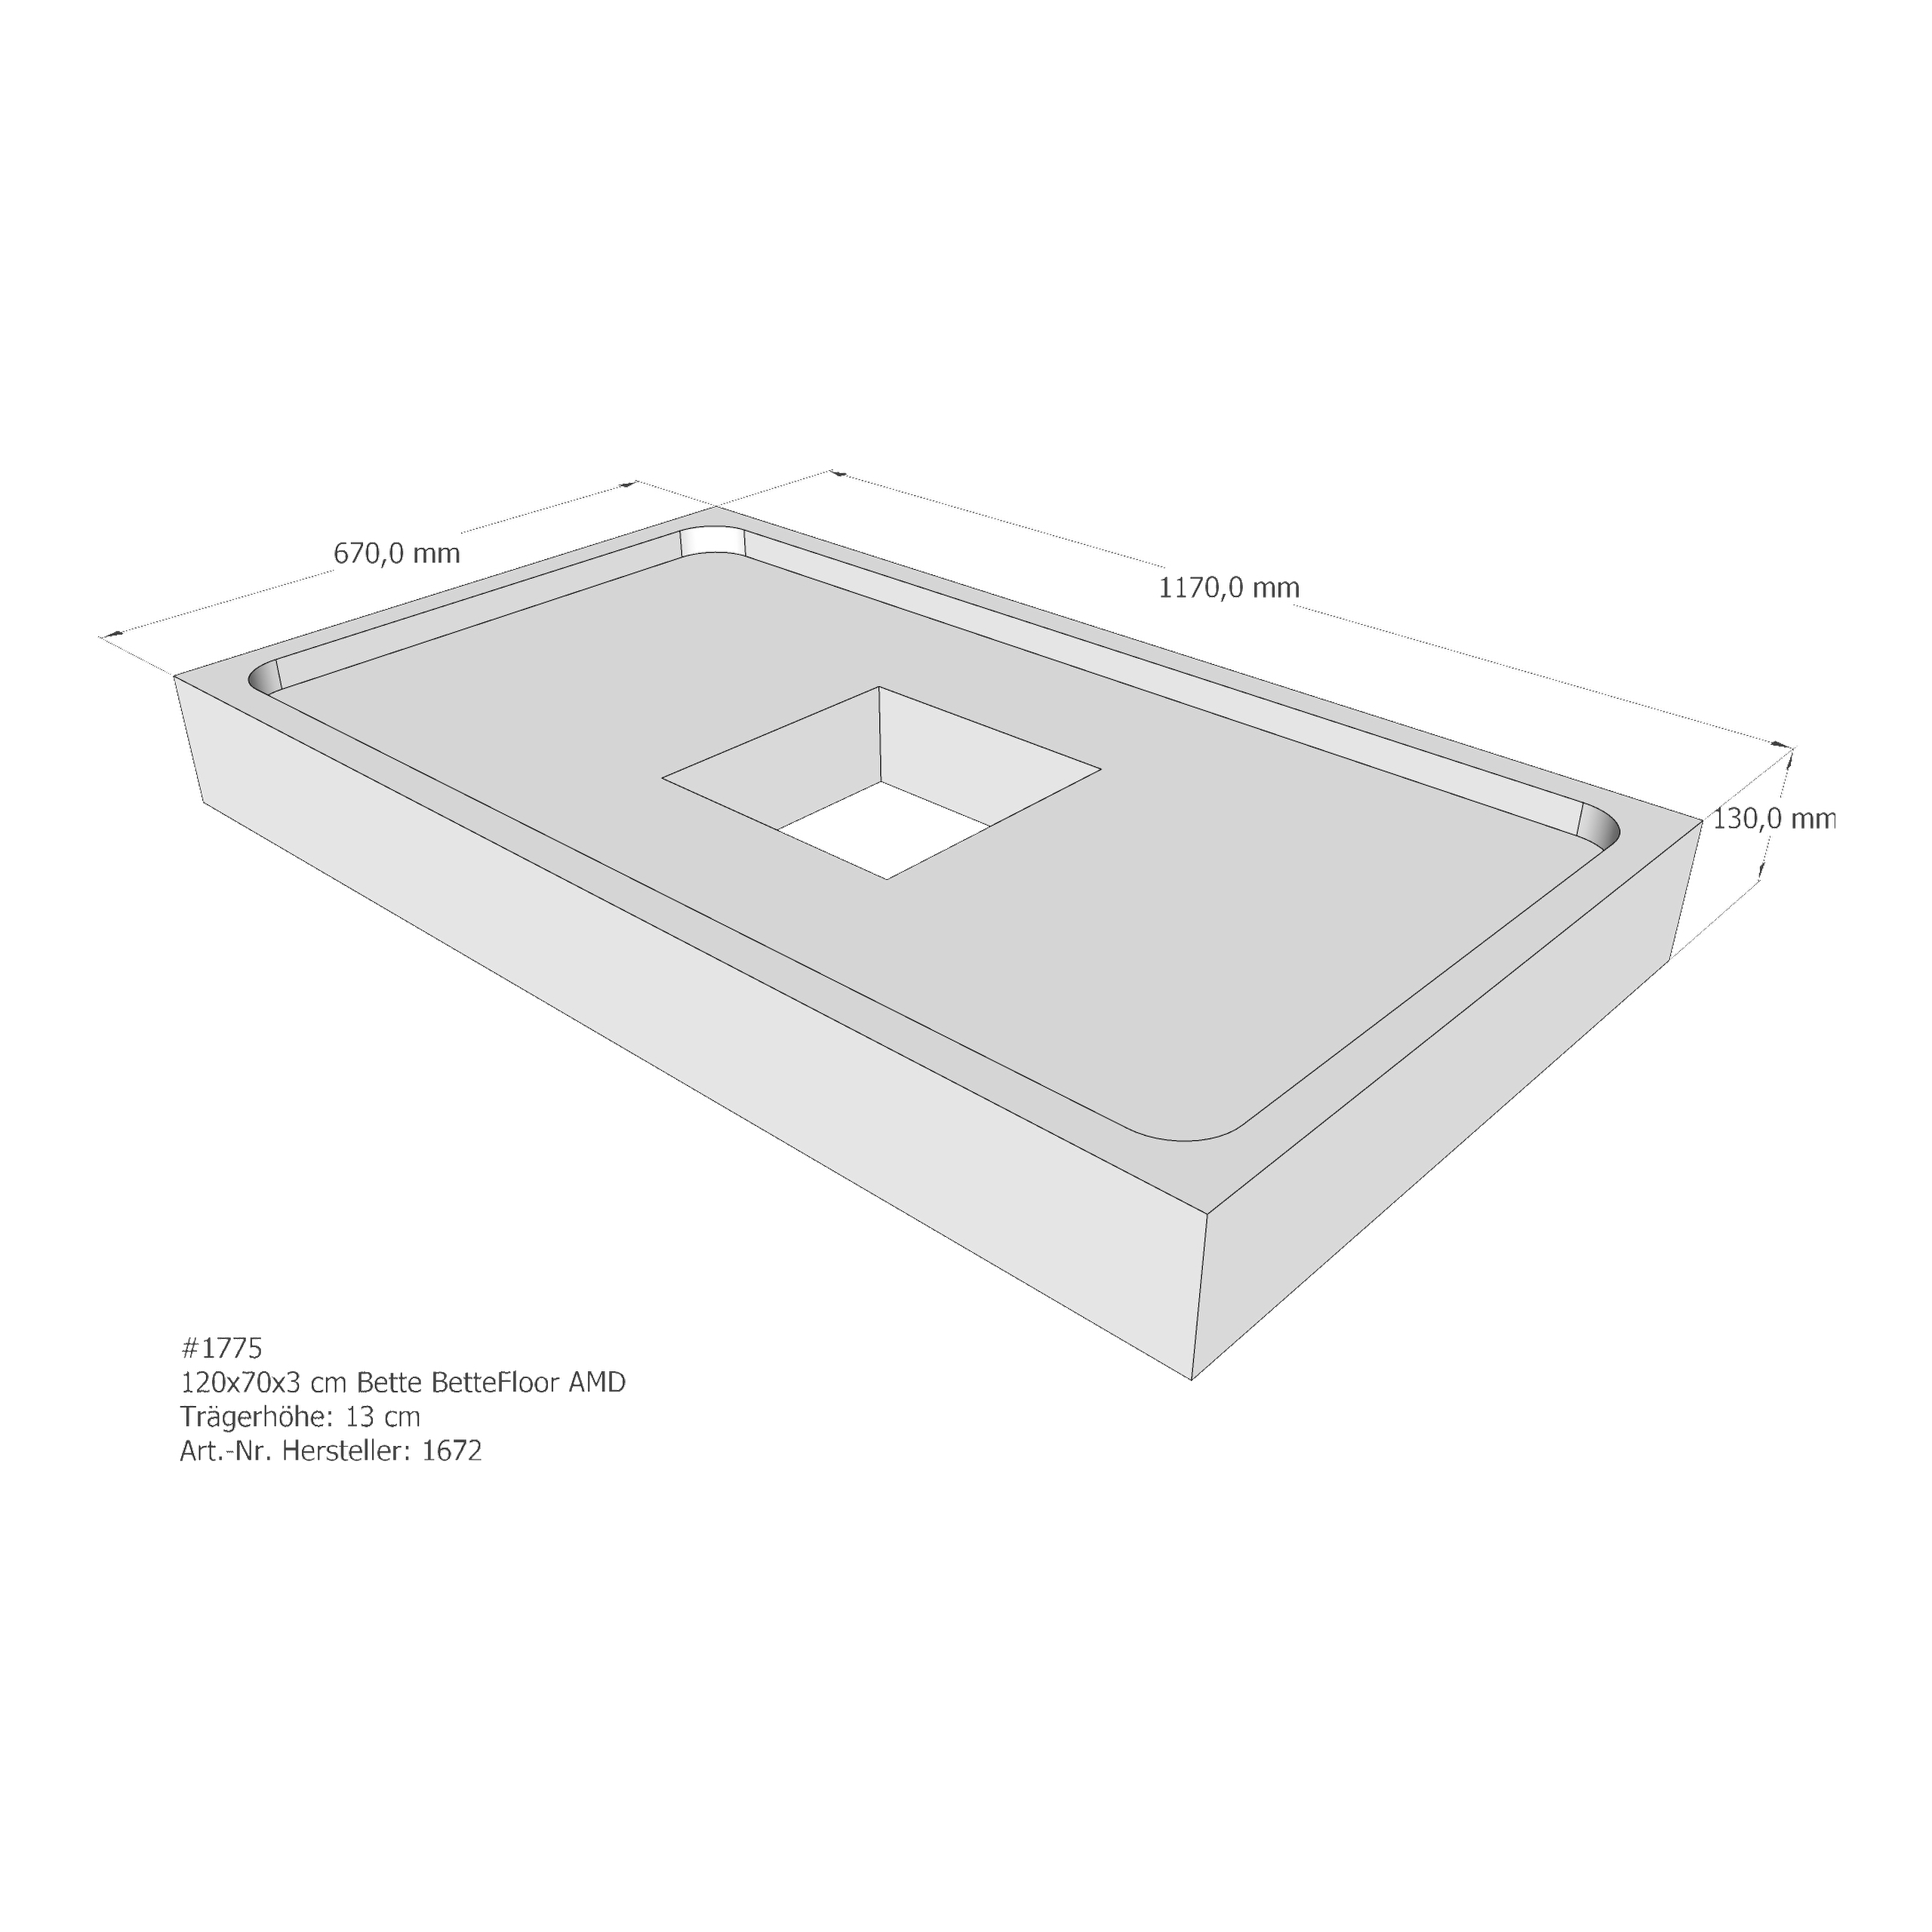 Duschwannenträger Bette BetteFloor 120x70x3 cm AMD